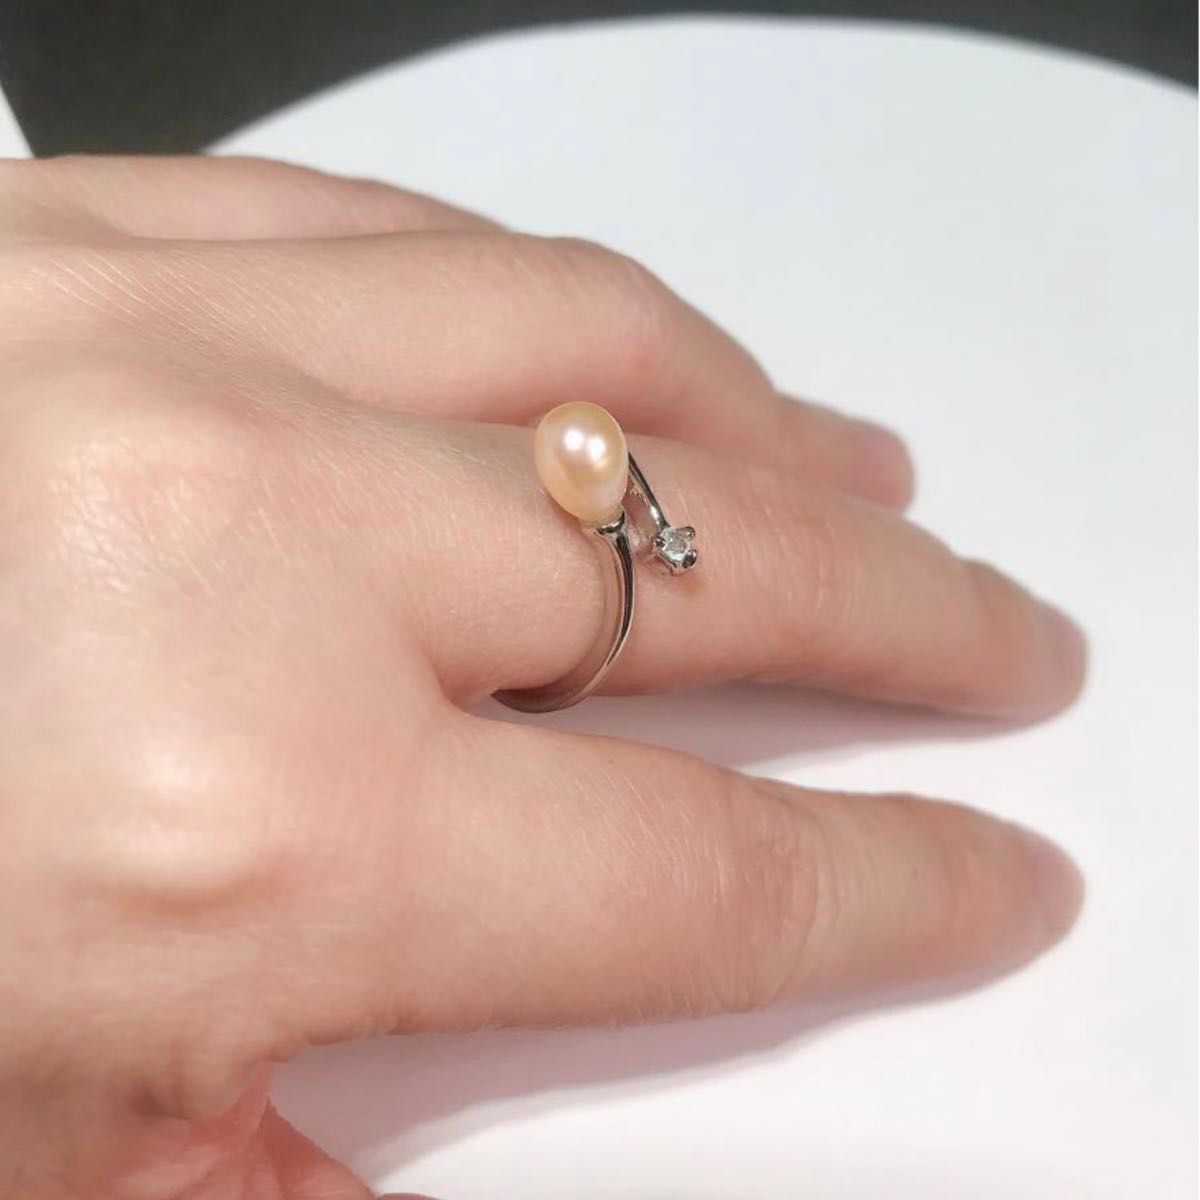 5A本真珠 天然 淡水パール czダイヤモンド 7mm ライス型 真珠 指輪 リング 925シルバー 淡水真珠 オレンジ